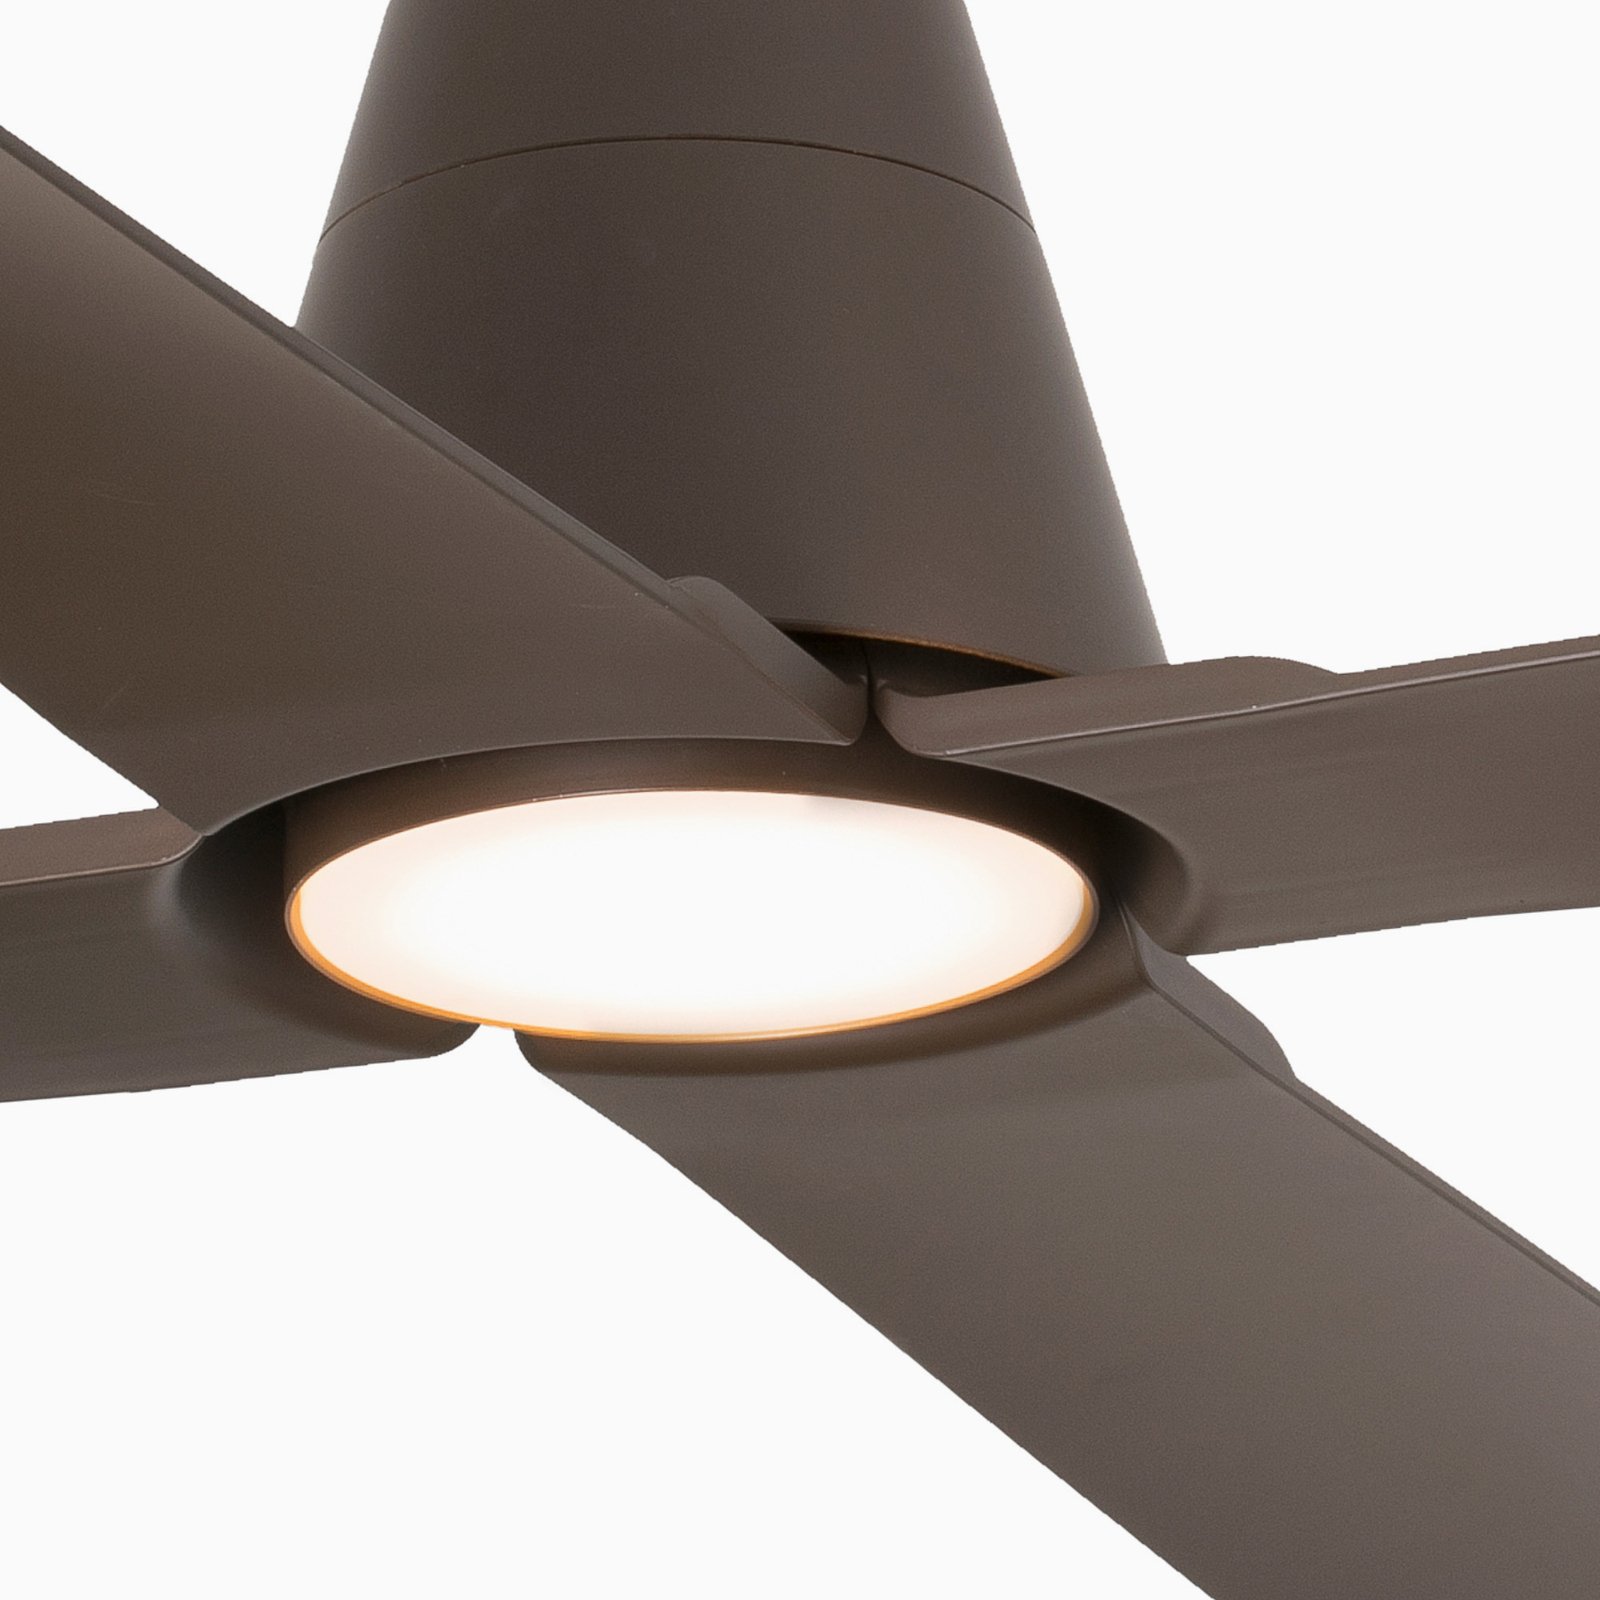 Typhoon L ceiling fan LED light IP44 brown